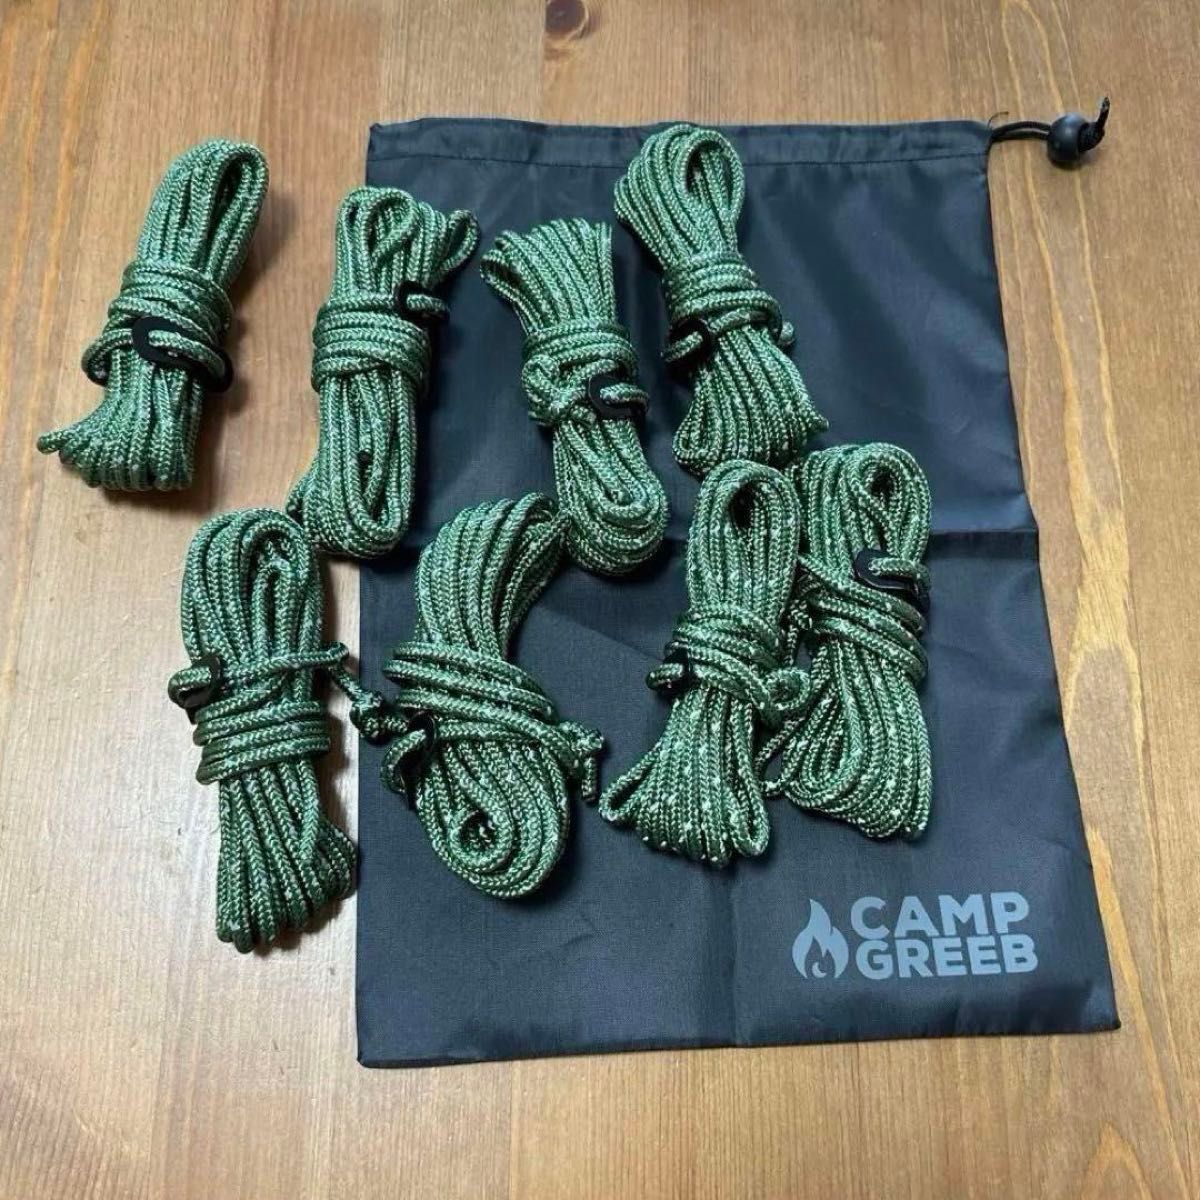 キャンプ ガイロープ パラコード 5mm 8本 ロープ テント タープ 反射材 キャンプ用品 テントロープ アウトドア